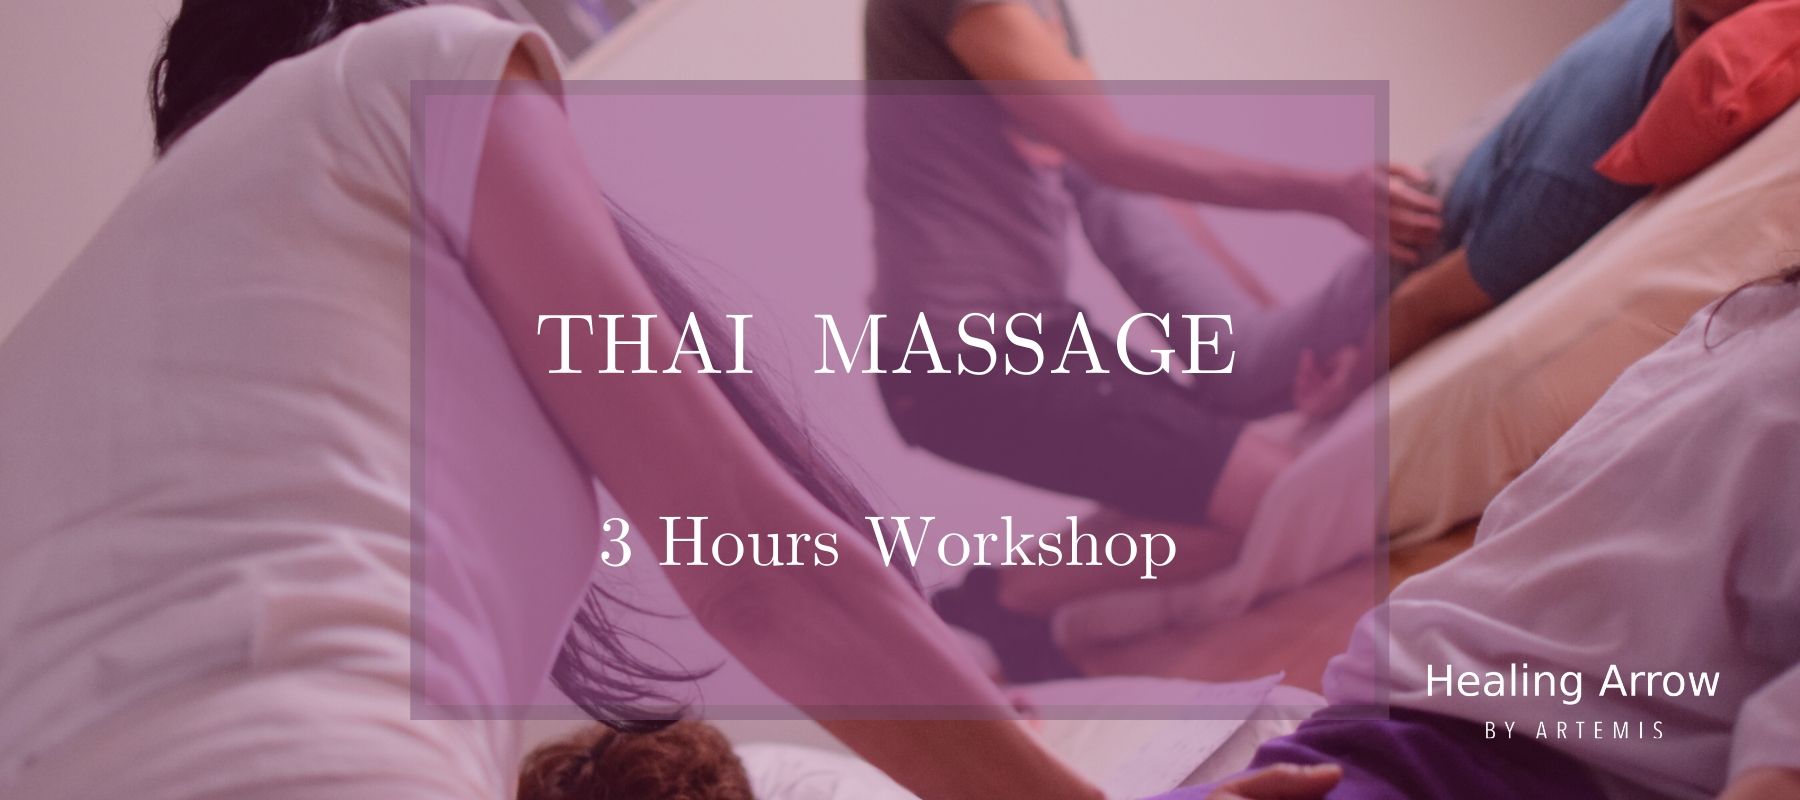 Thai Massage Ror Beginners 3h Thai Massage Workshop Athens Greece